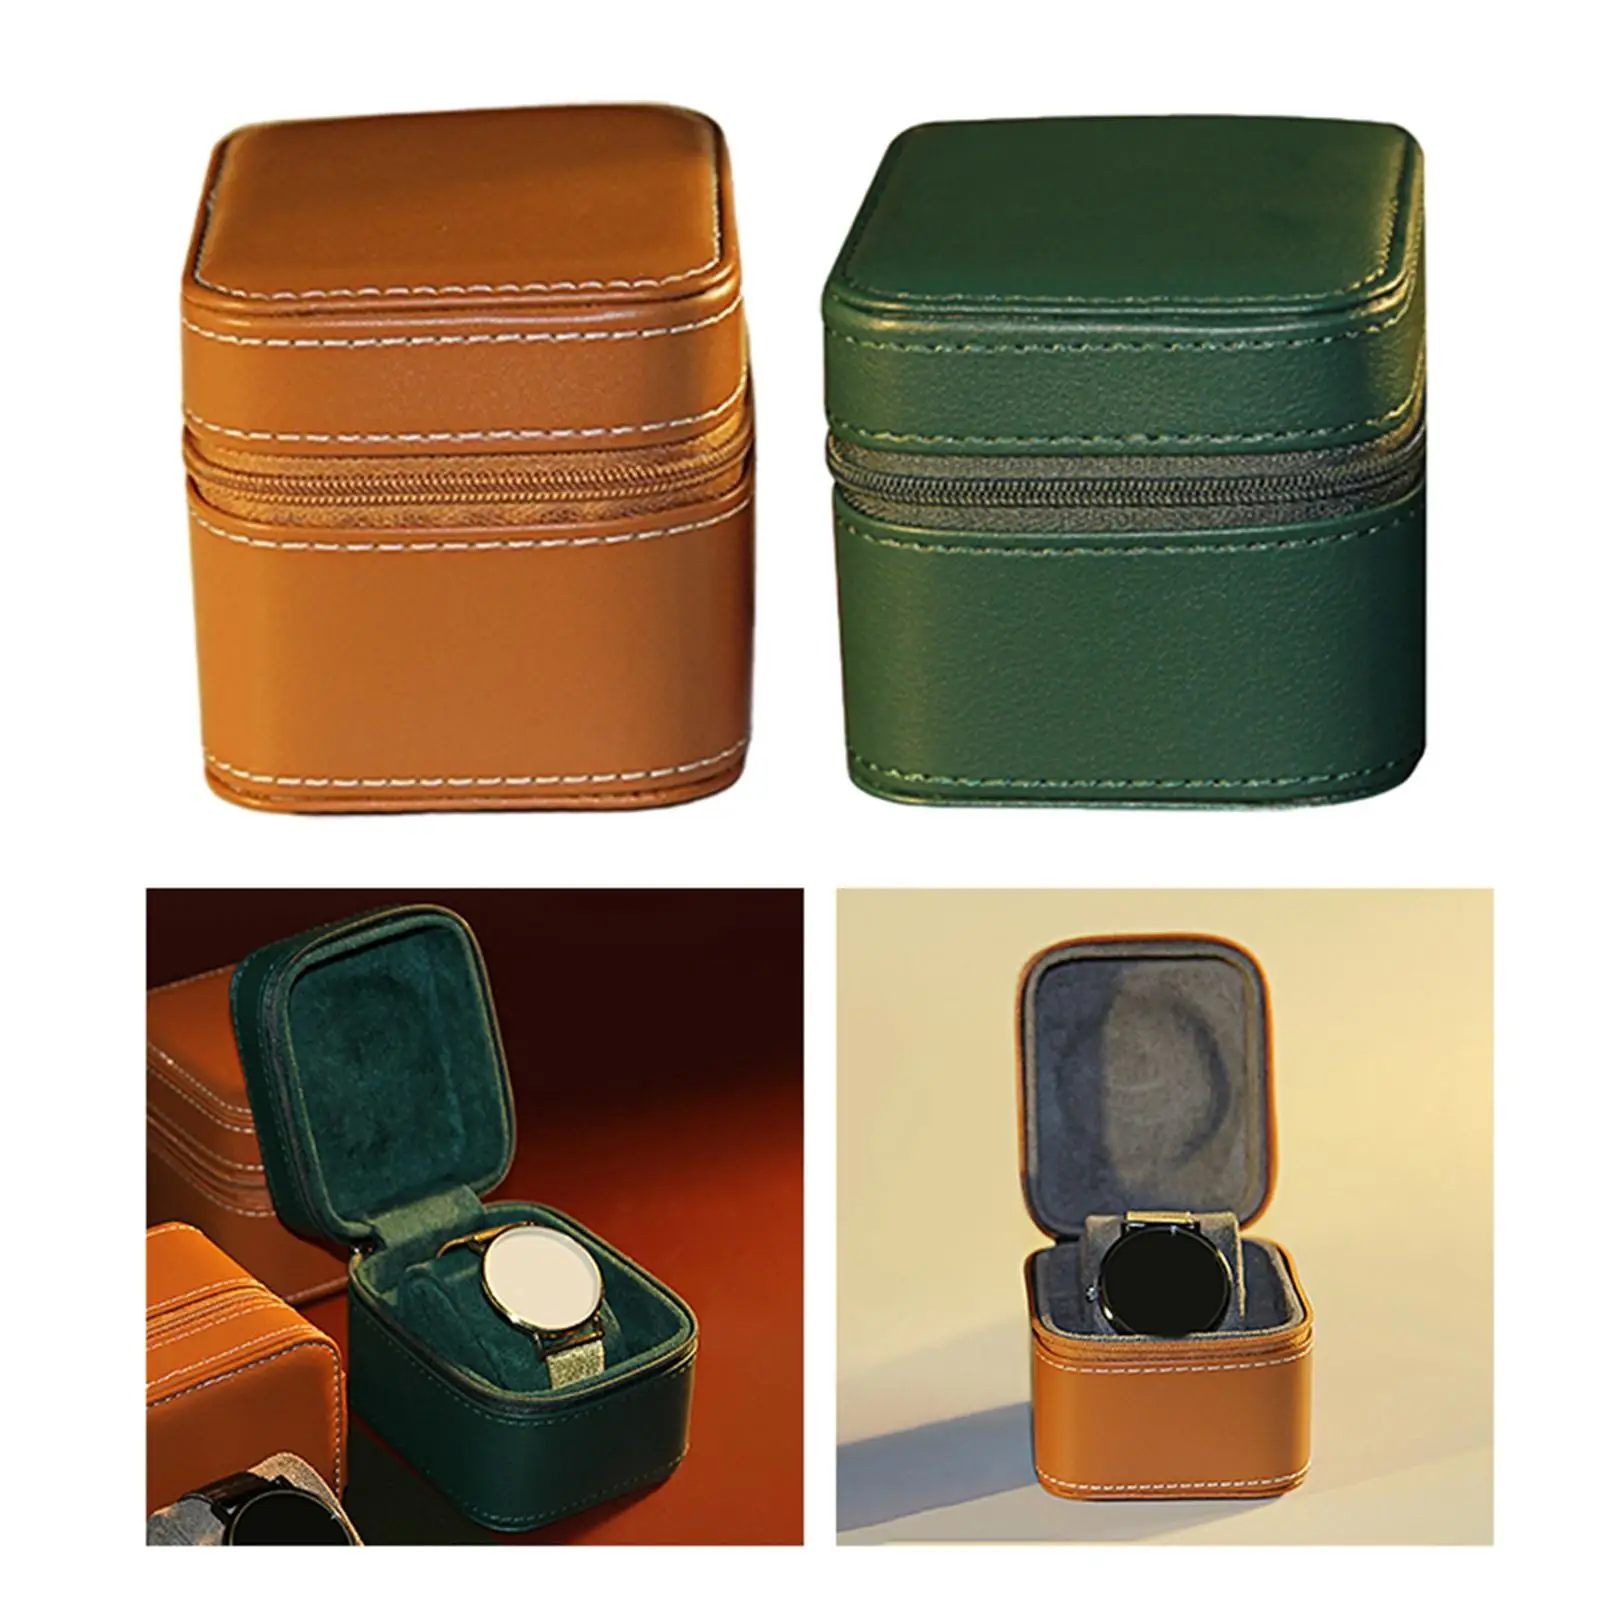  Organizer Portable Travel Storage Box Jewelry Box Wristwatch Display Box